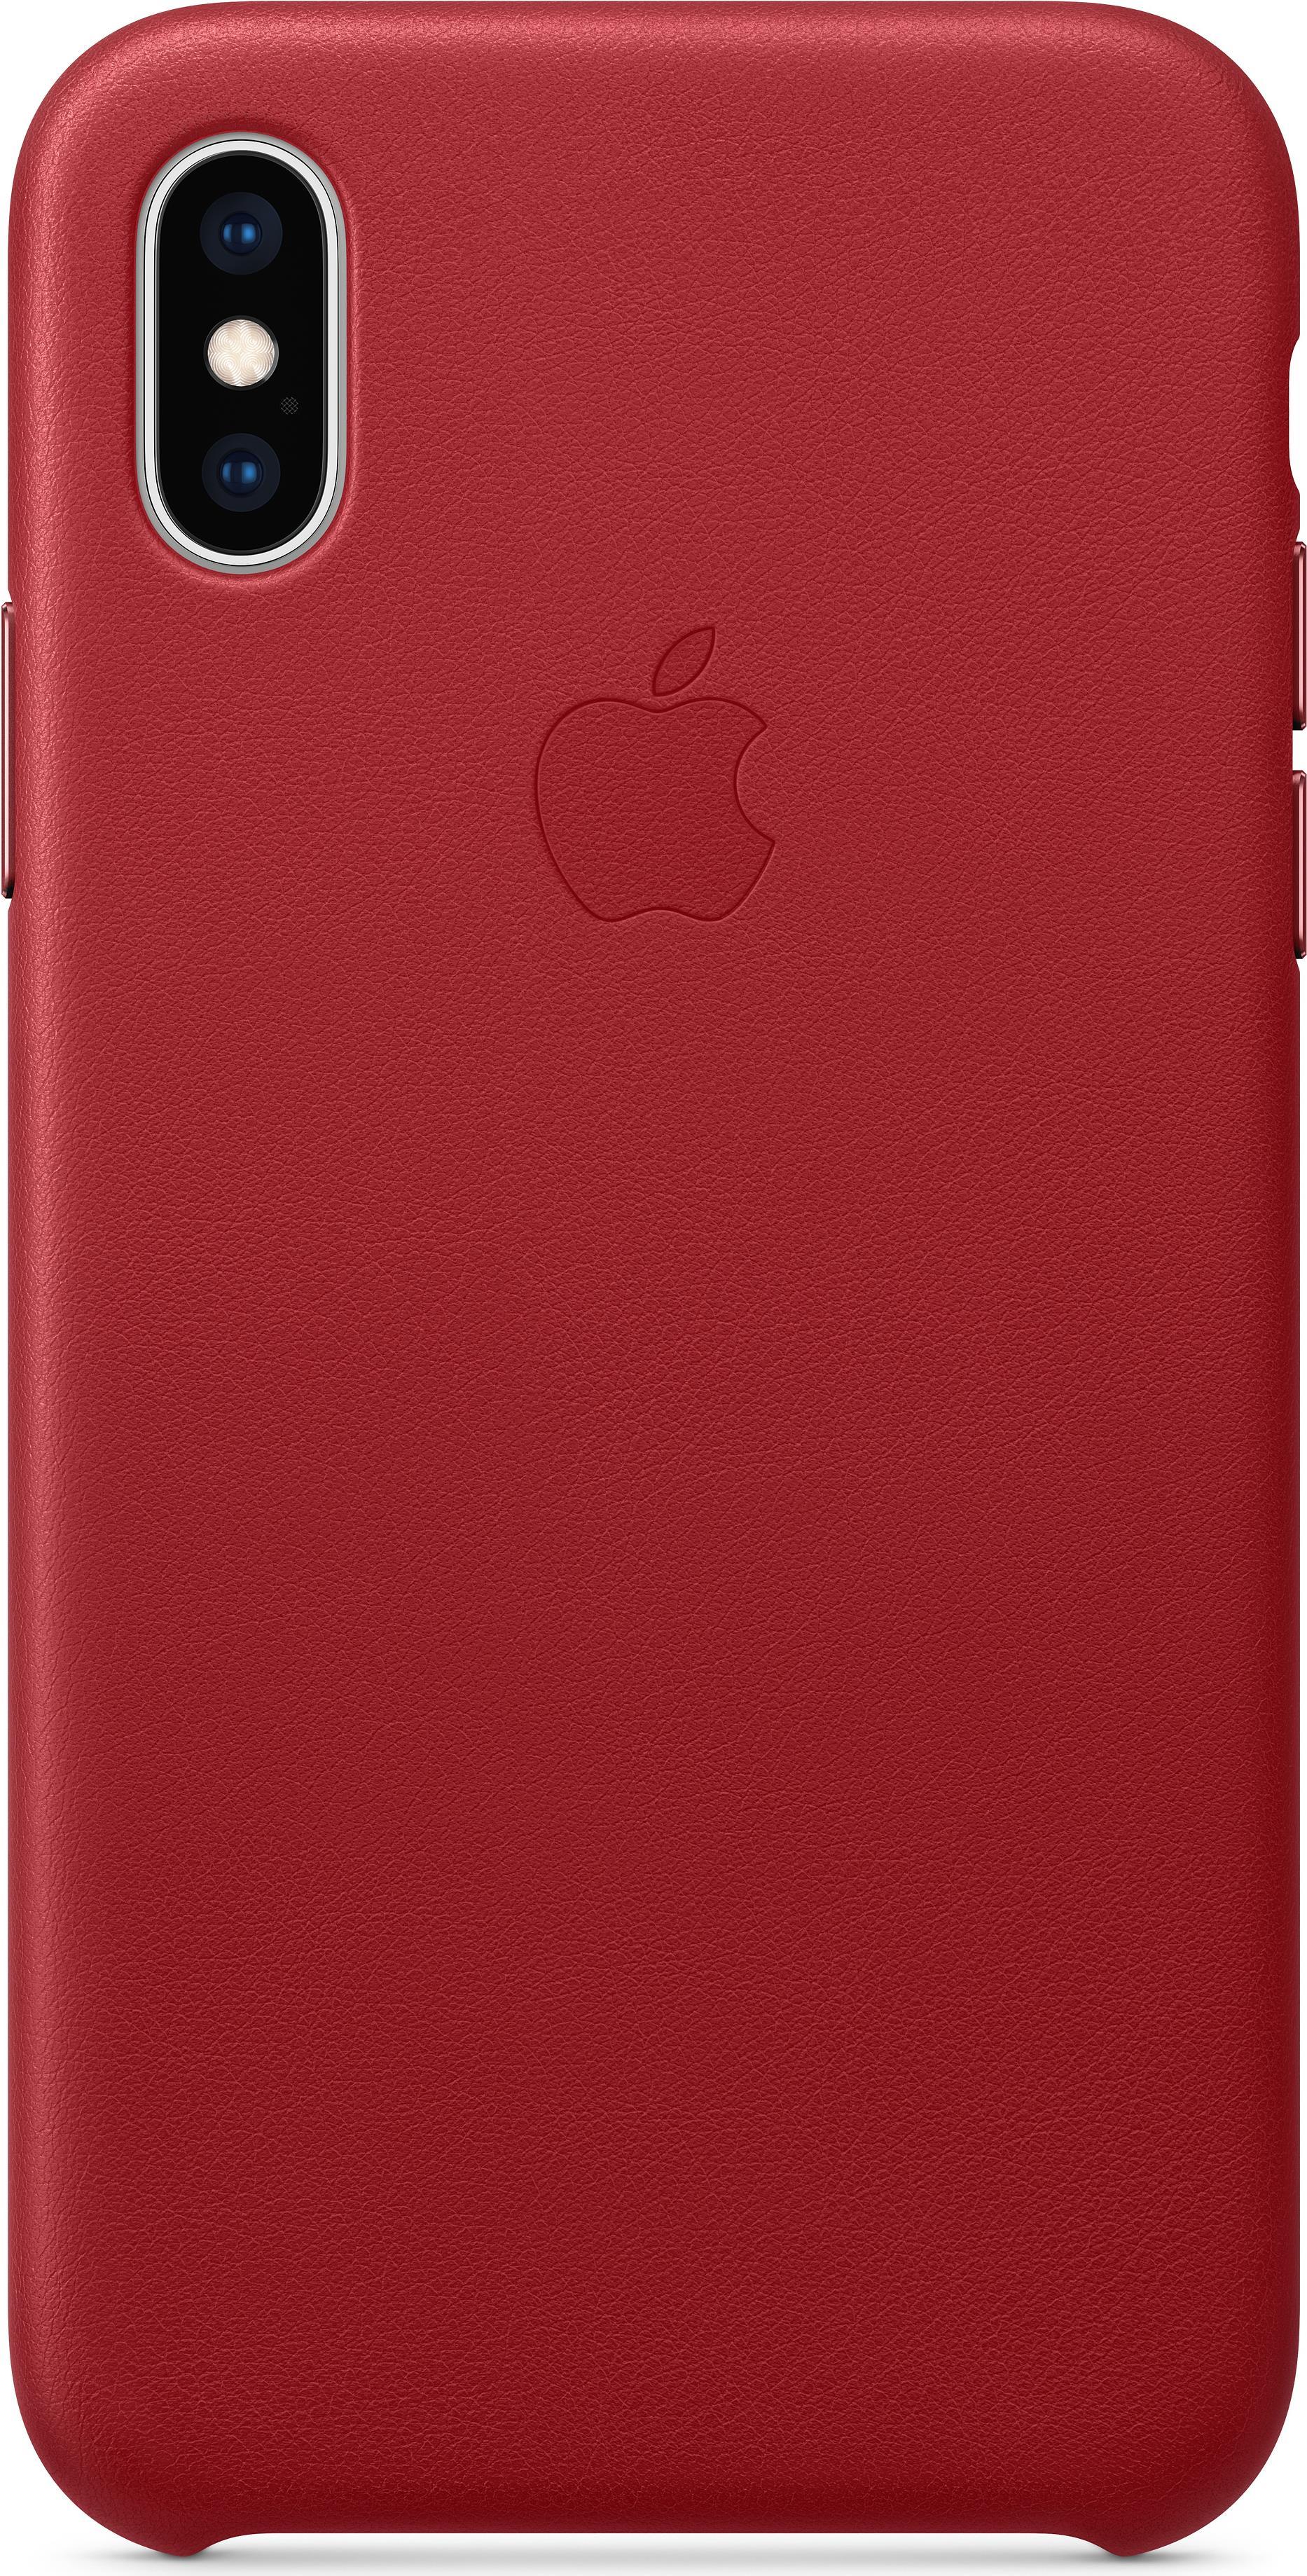 Apple (PRODUCT) RED - Hintere Abdeckung für Mobiltelefon - Leder - Rot - für iPhone Xs (MRWK2ZM/A)